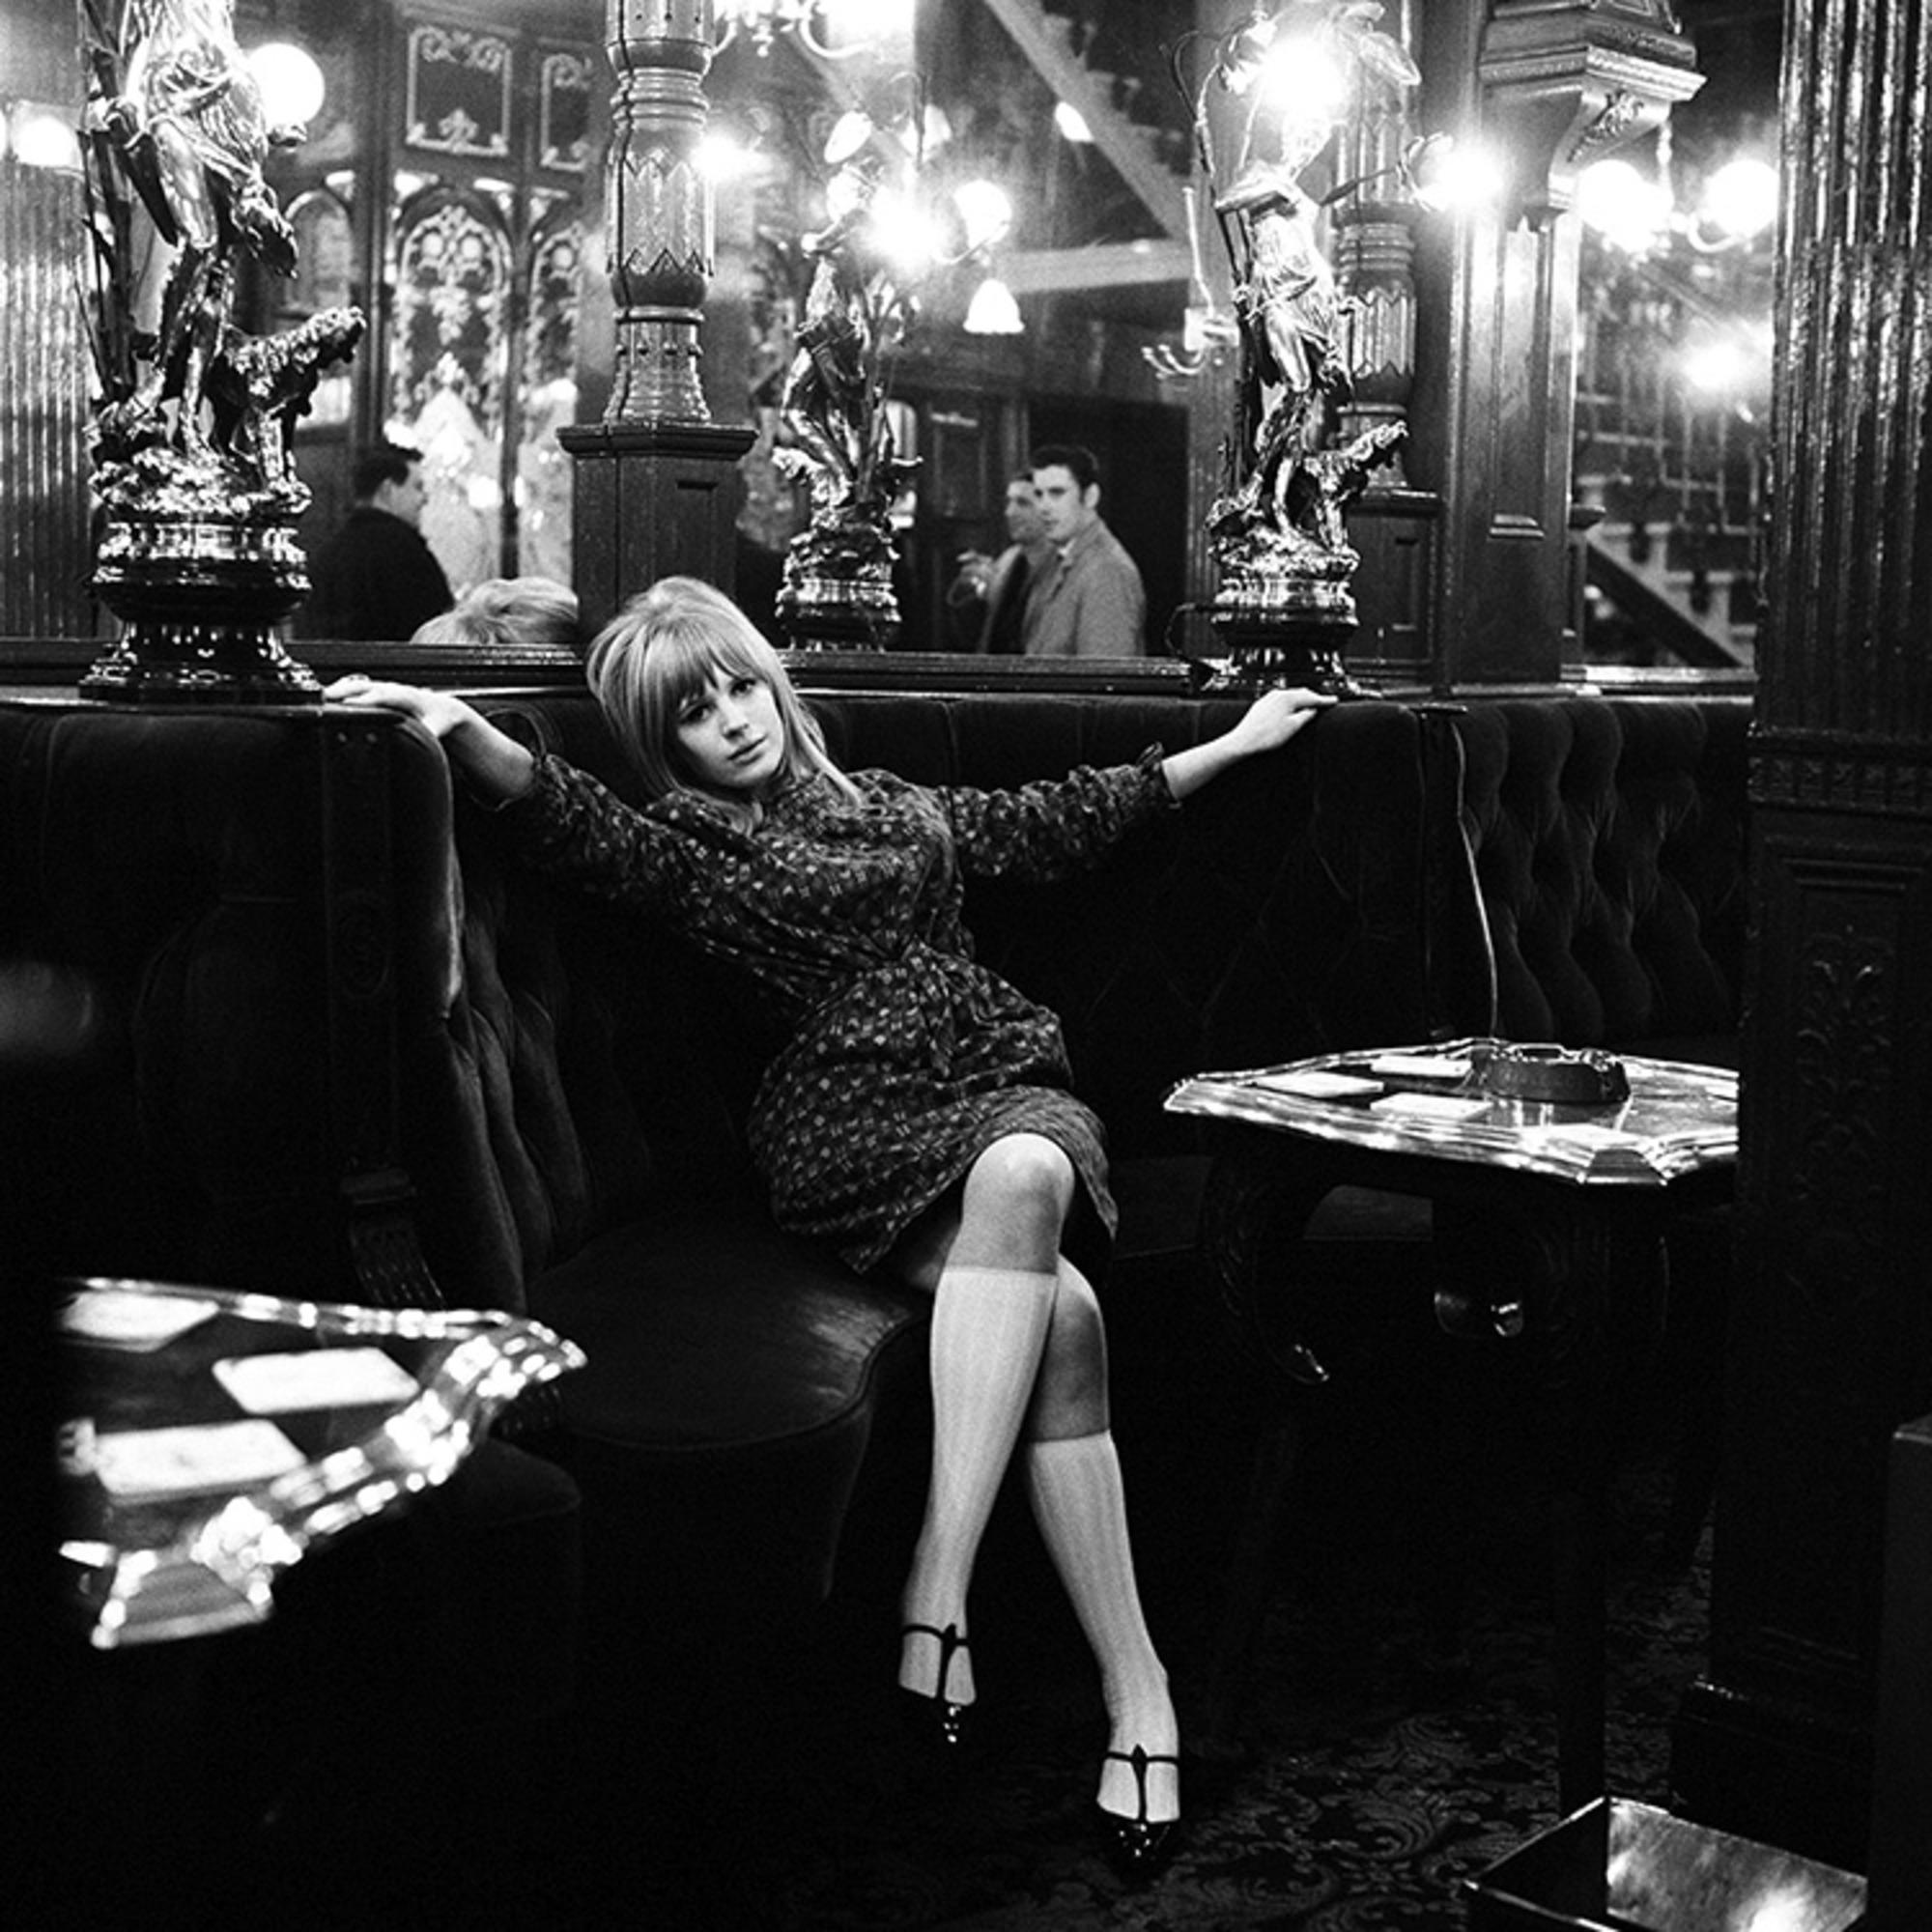 Gélatine argentique, signée et numérotée

La chanteuse, compositrice et actrice anglaise Marianne Faithfull, photographiée au pub The Salisbury à Londres, en 1964.

Tailles disponibles :
16" x 20" Edition de 50
20" x 24" Edition de 50
30" x 40"